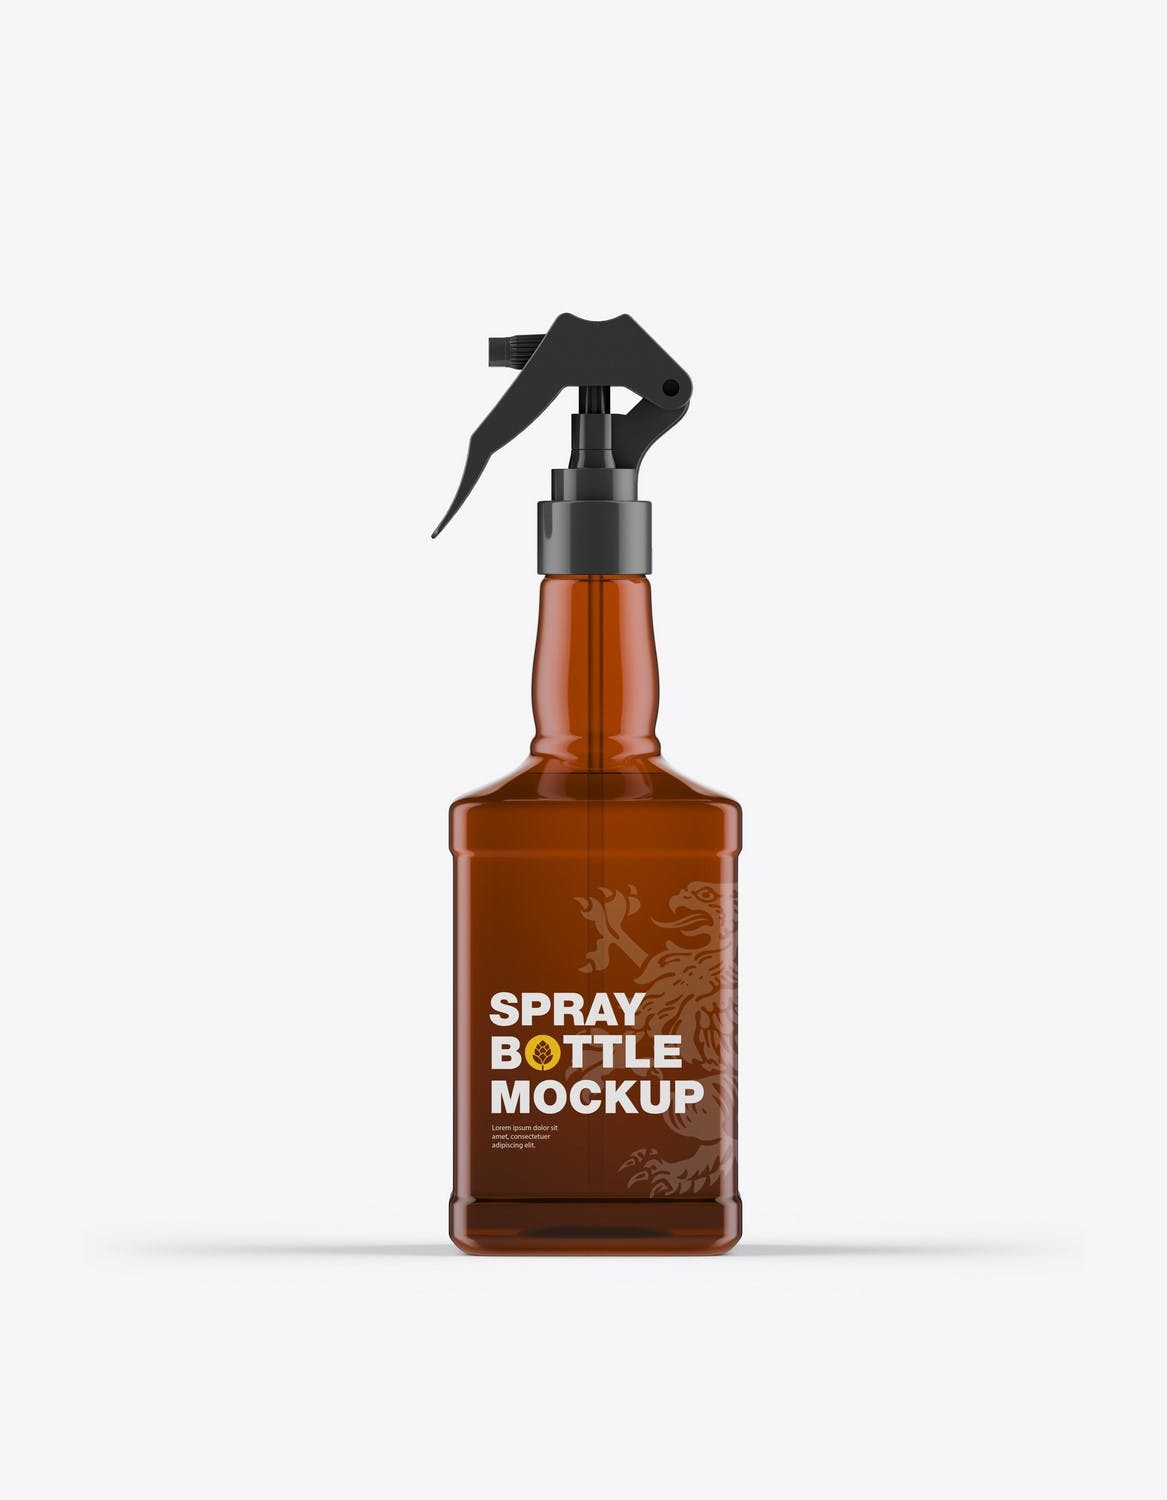 玻璃喷雾瓶包装设计样机 Pack Glass Spray Bottles Mockup 样机素材 第3张